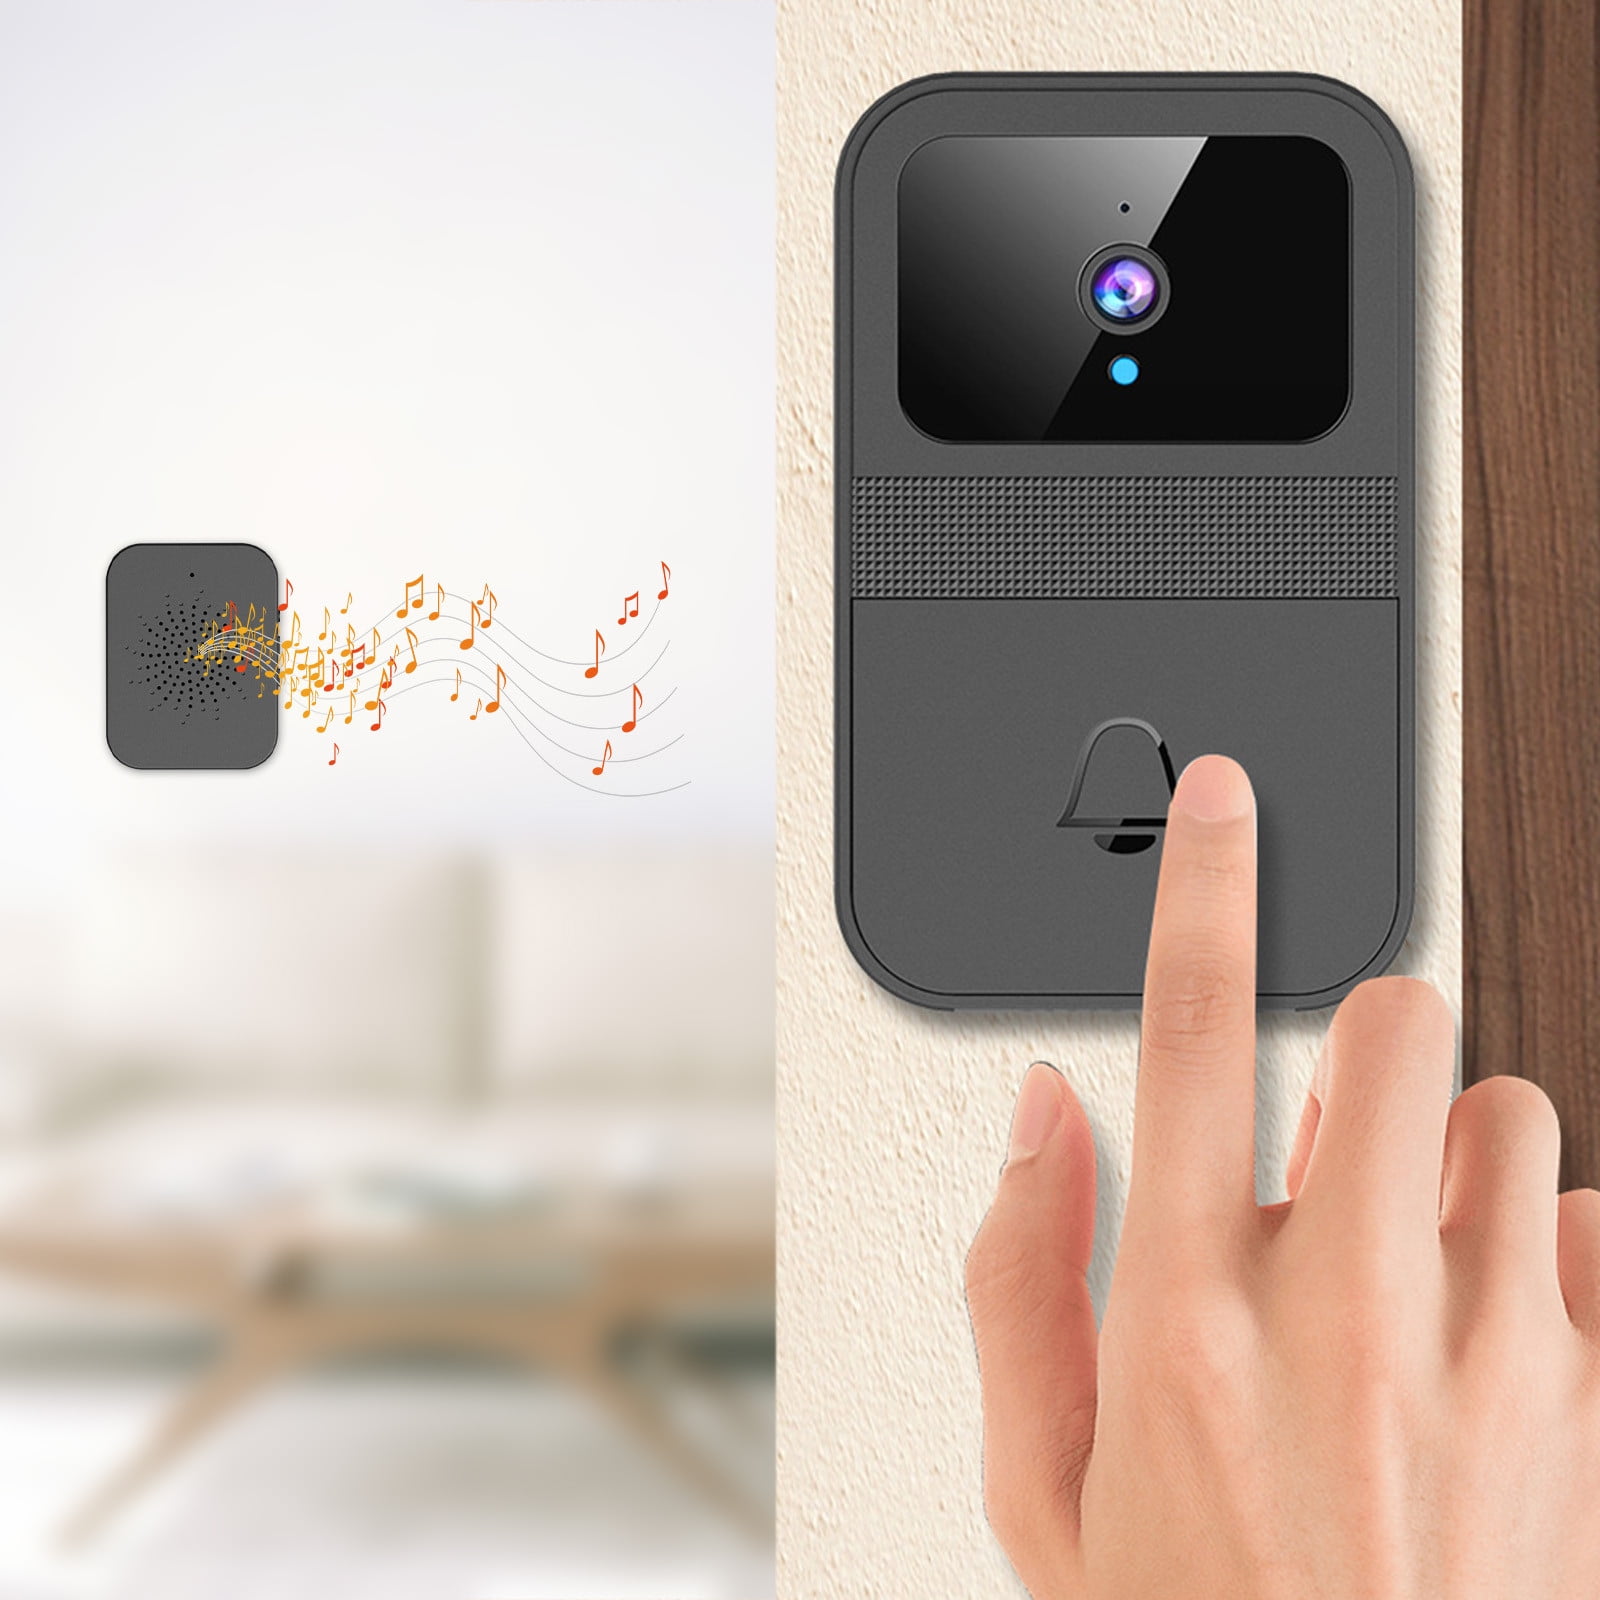 Rechargeable WiFi Video Doorbell Camera